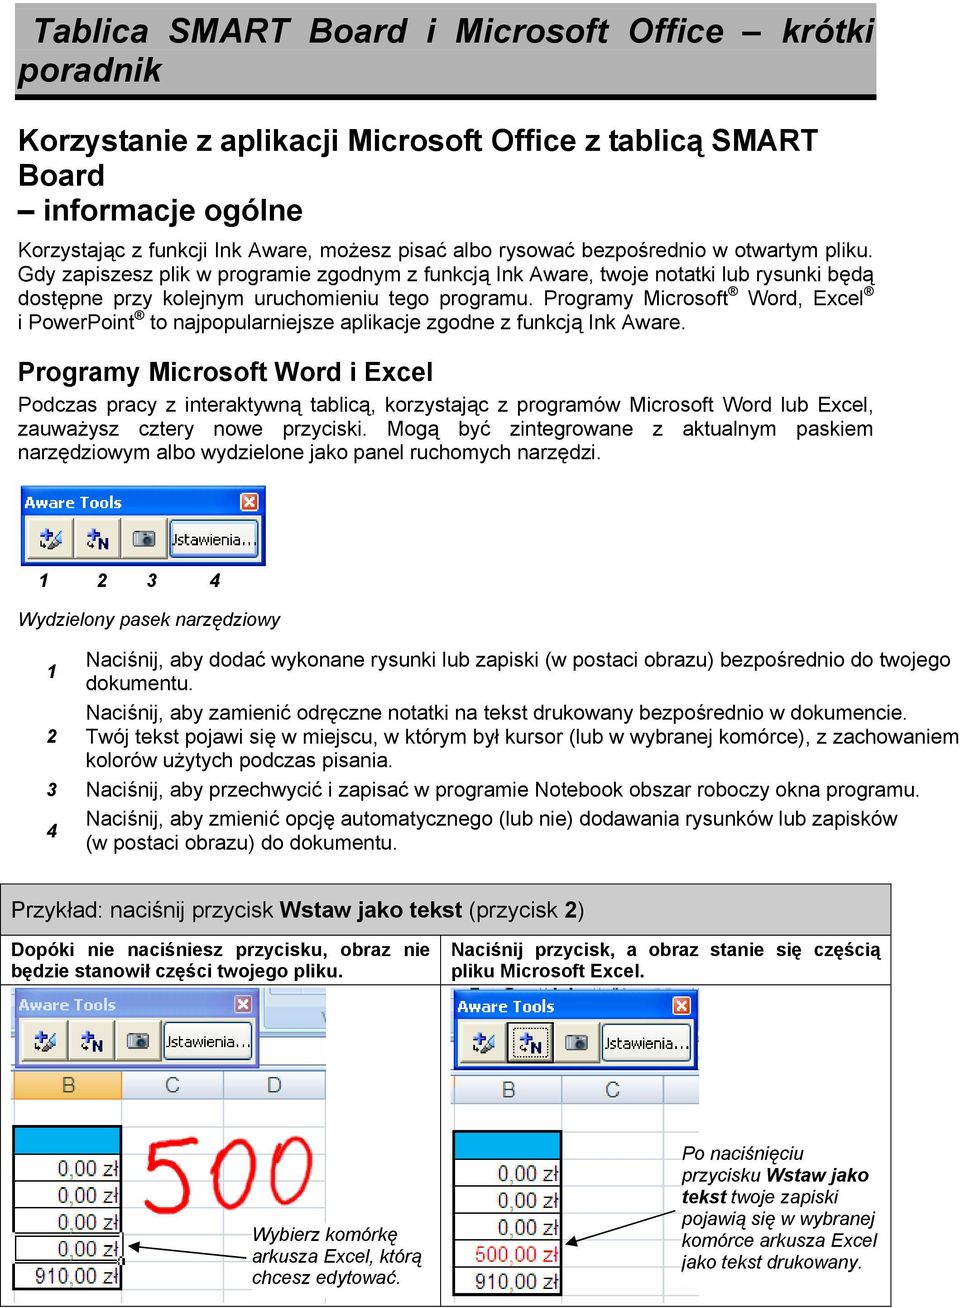 Programy Microsoft Word, Excel i PowerPoint to najpopularniejsze aplikacje zgodne z funkcją Ink Aware.